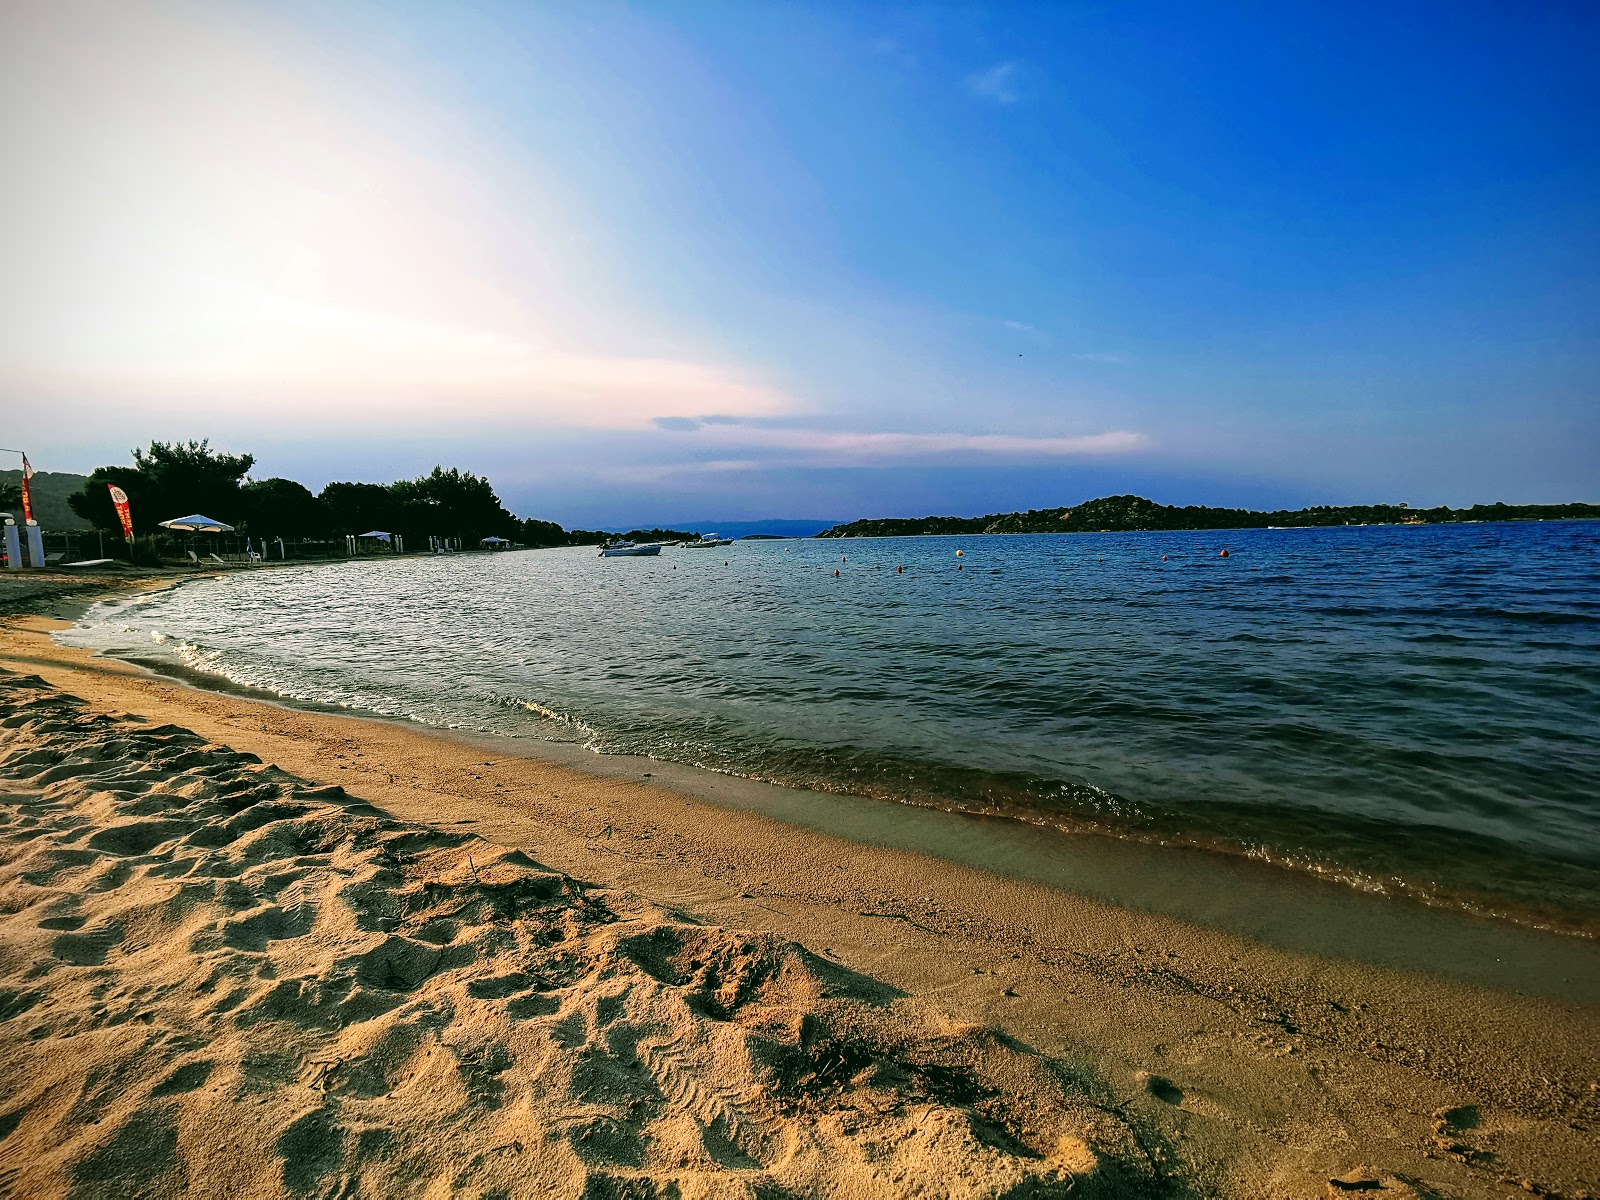 Valokuva Vourvourou beachista. pinnalla turkoosi puhdas vesi:n kanssa